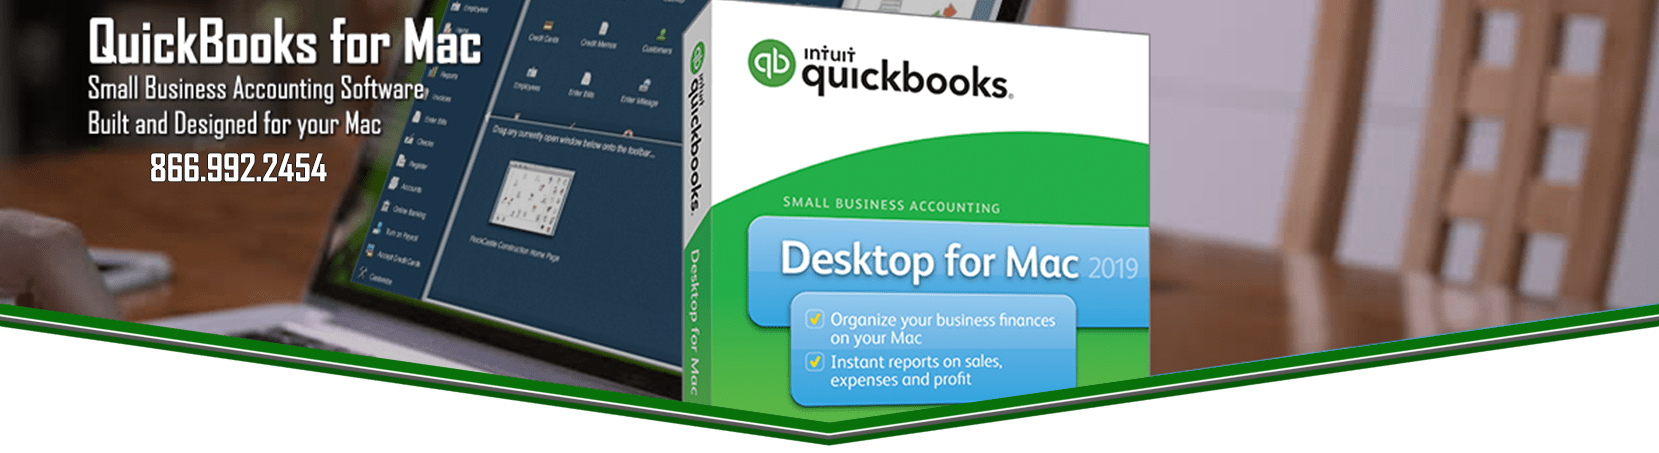 download intuit quickbooks 2015